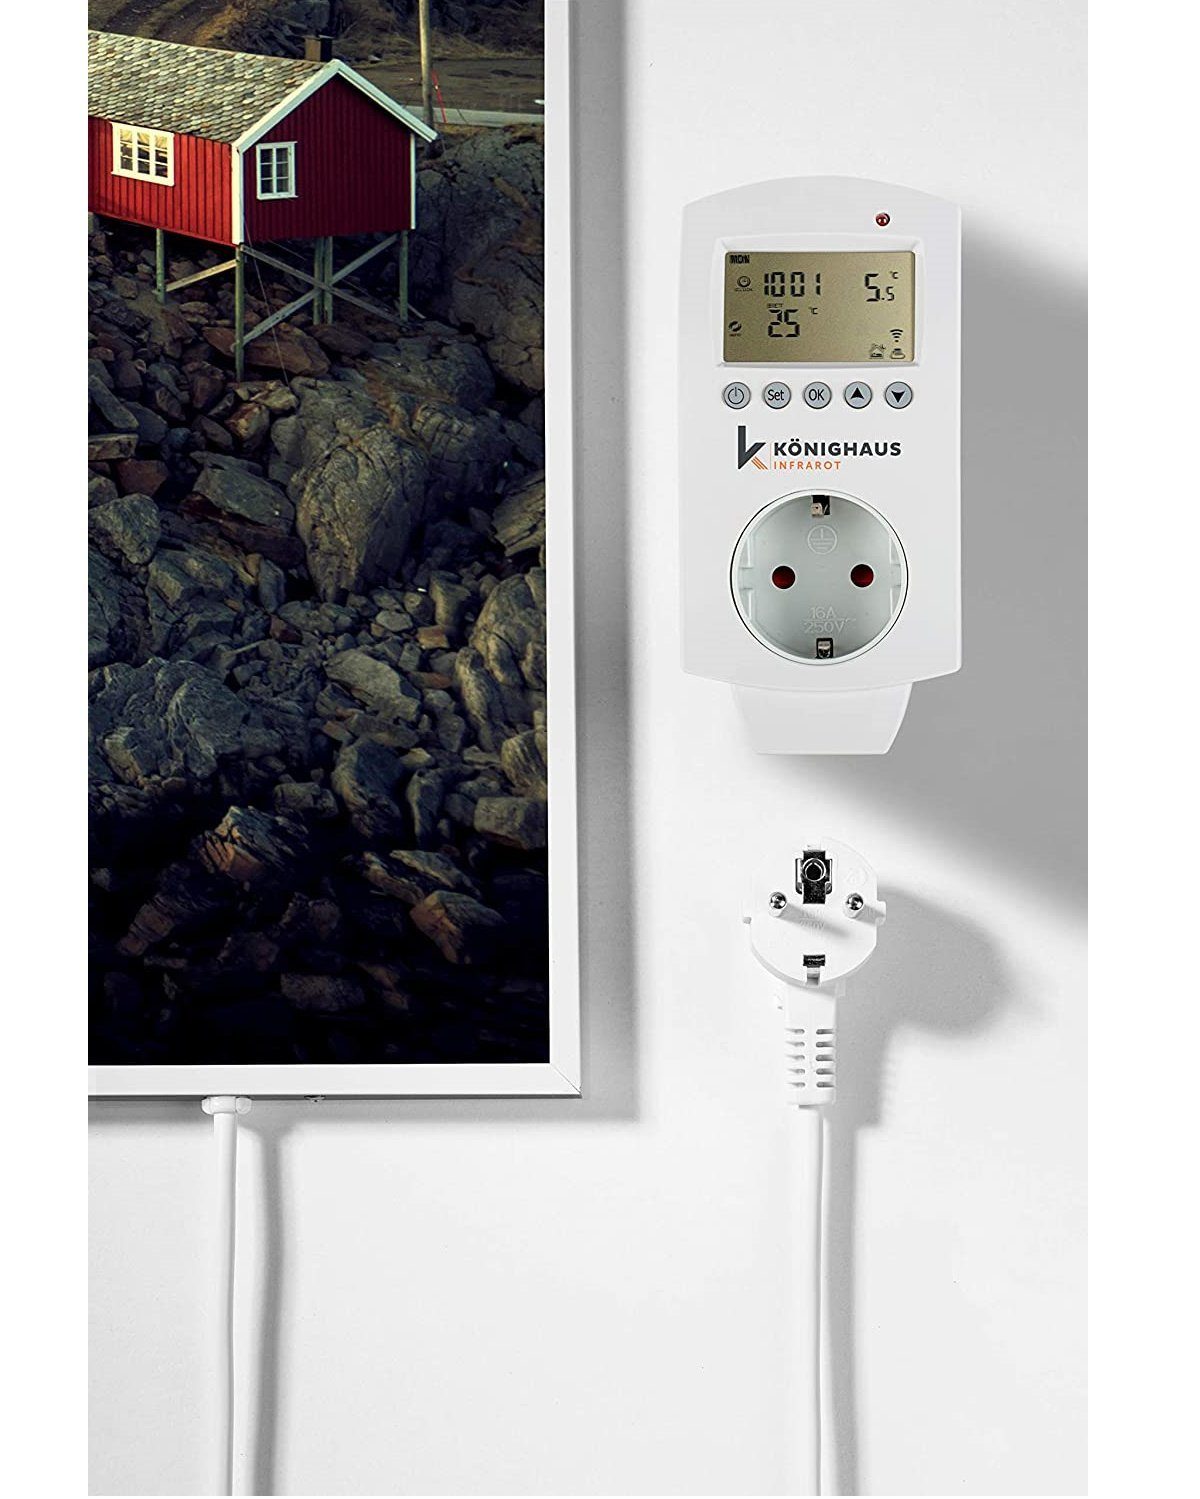 Könighaus Infrarotheizung Bild-Serie Norwegen angenehme Aussicht in Home Smart Smart, 600W Strahlungswärme, Made Germany